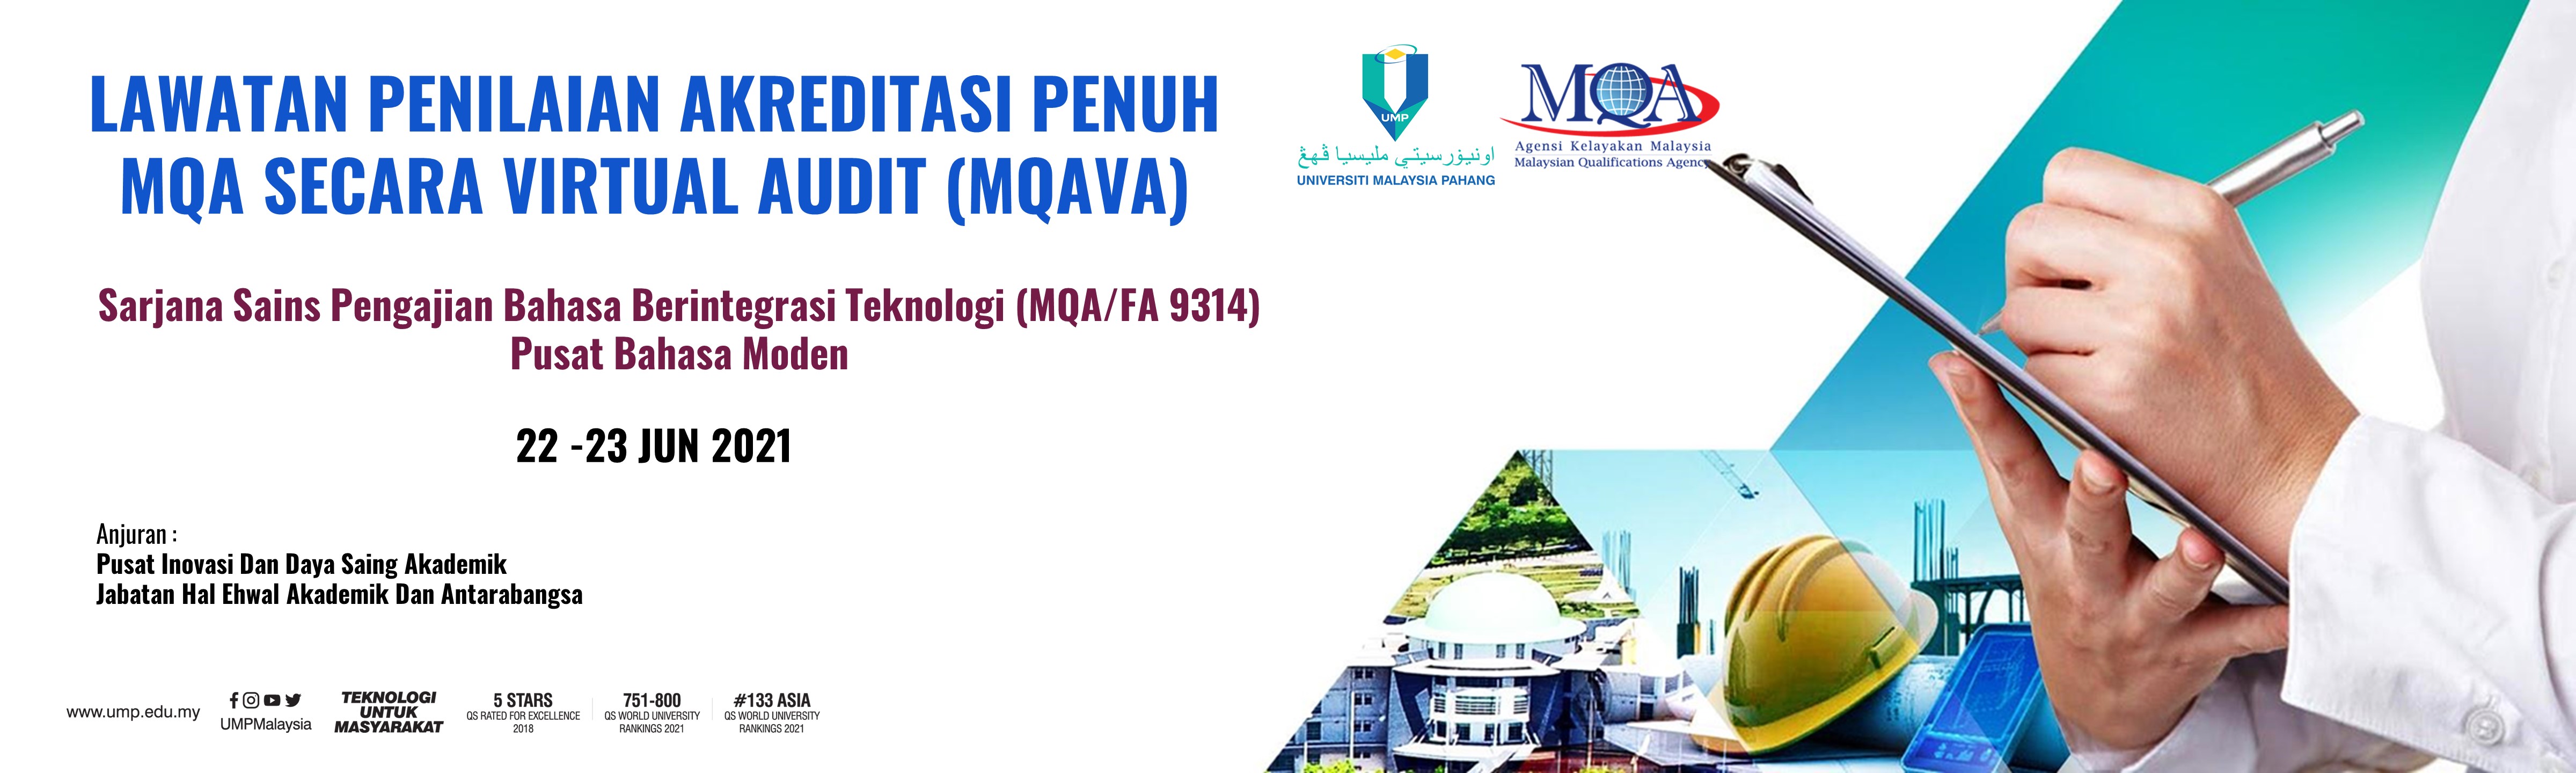 Sarjana Sains Pengajian Bahasa Berintegrasi Teknologi (MQA /FA 9314) Pusat Bahasa Moden